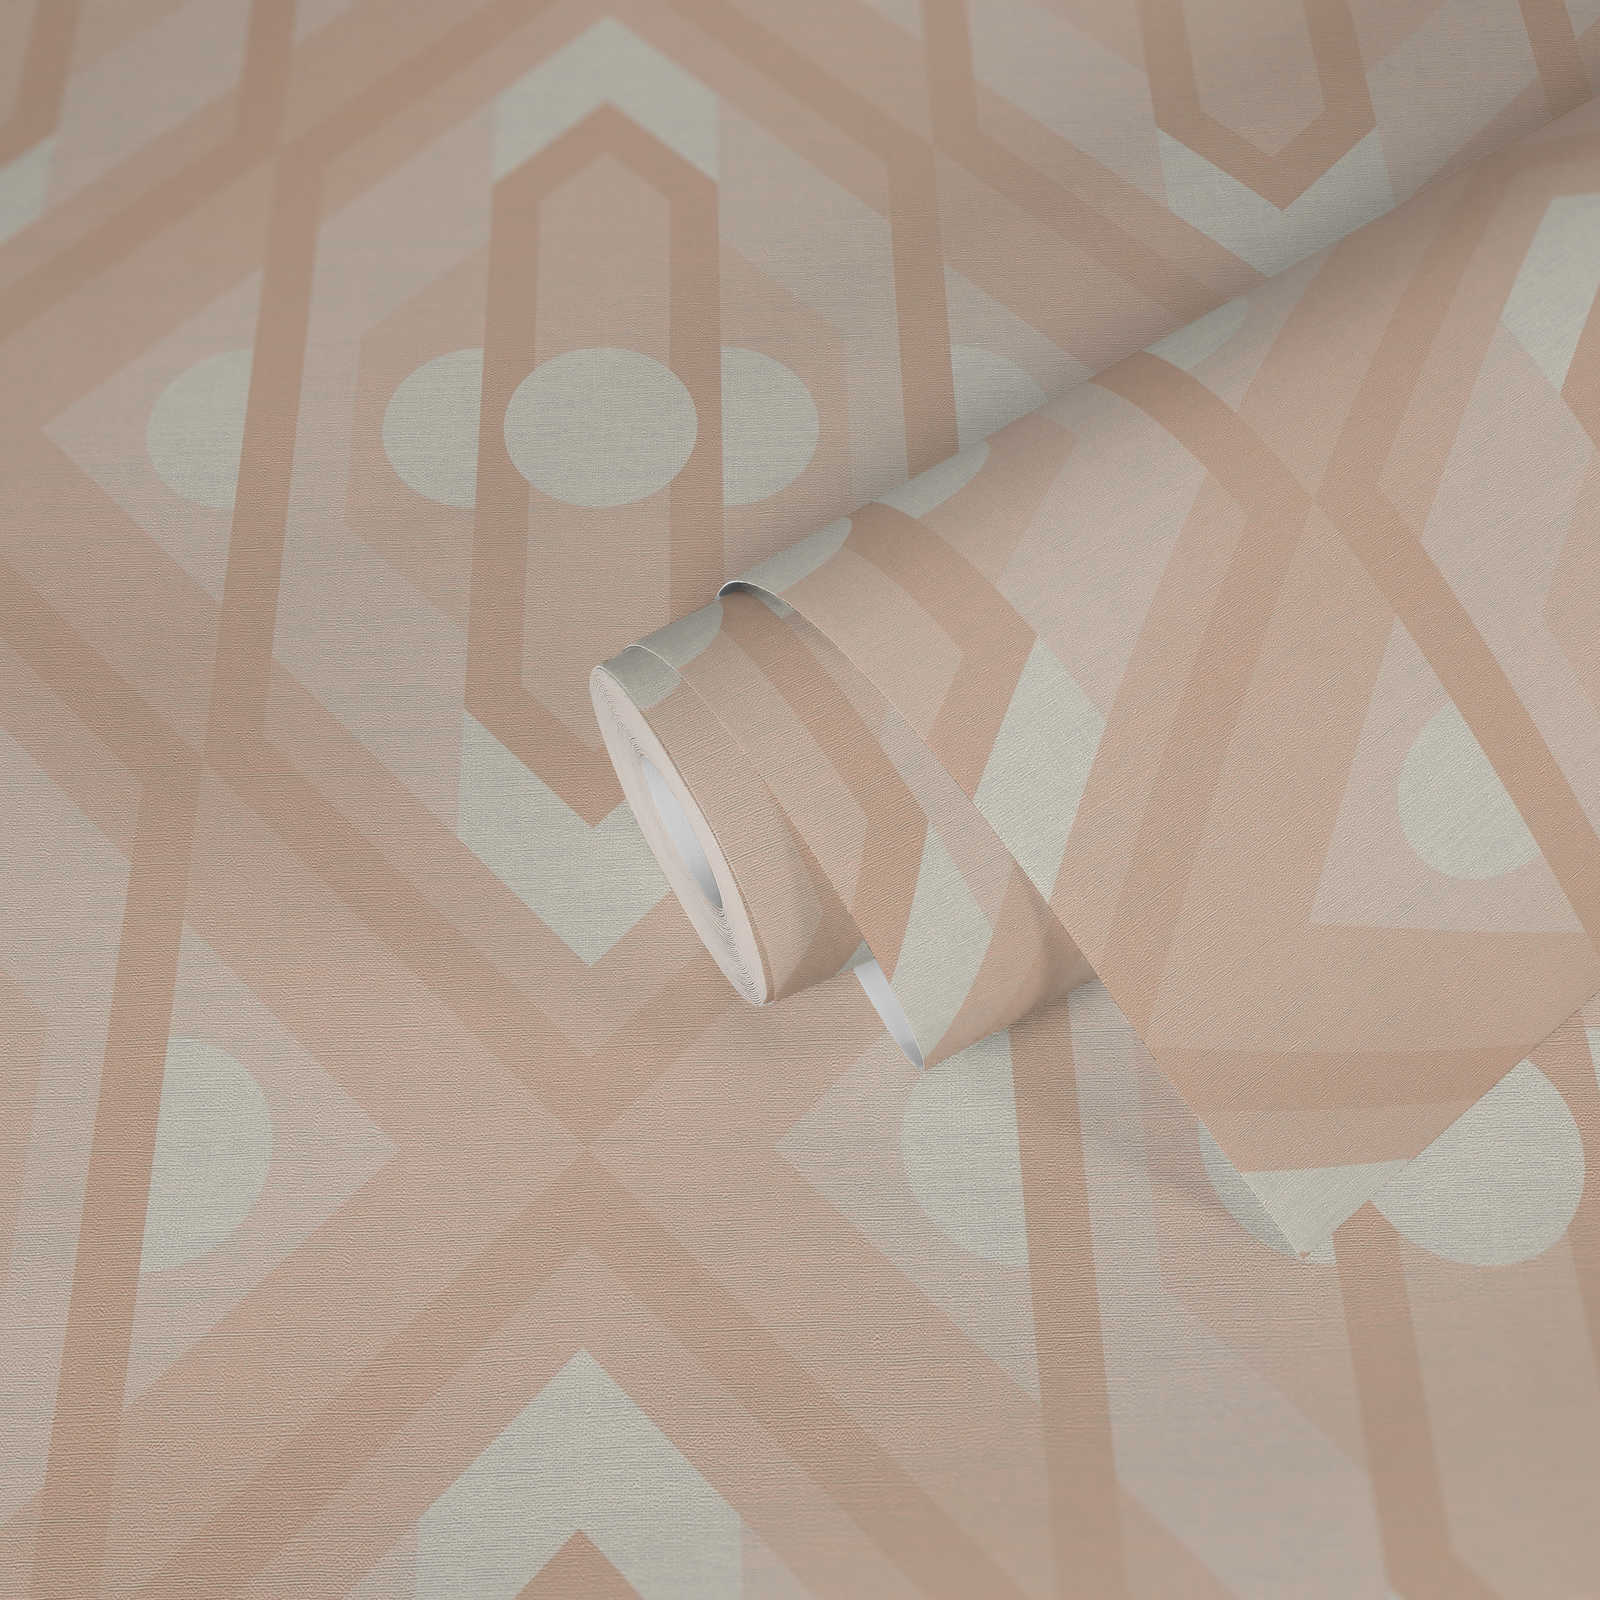             papier peint en papier rétro avec ornements géométriques aux couleurs douces - beige, crème, blanc
        